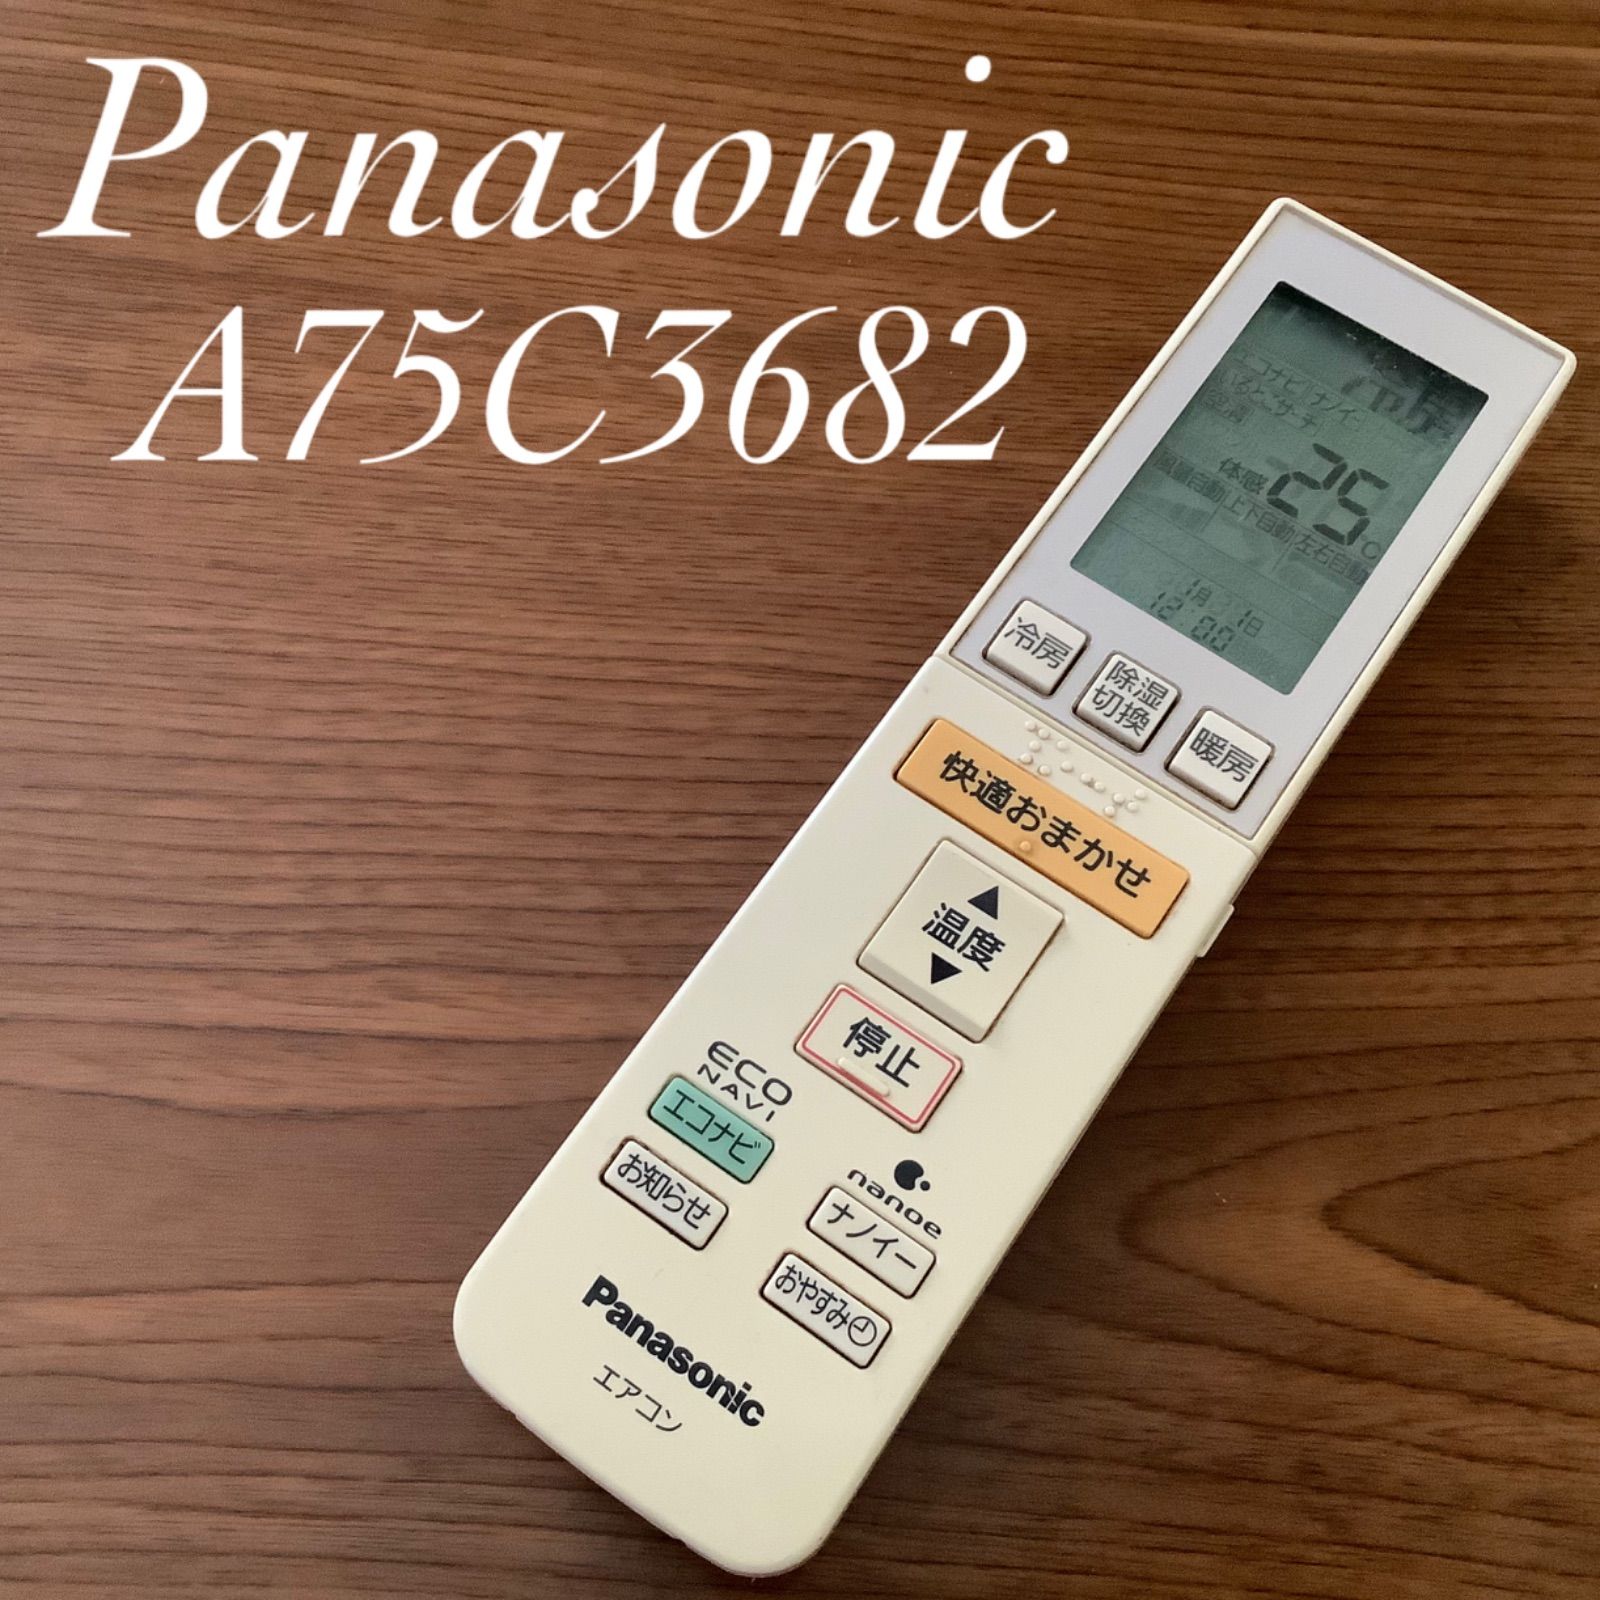 Panasonic パナソニック リモコン A75C3682 - エアコン